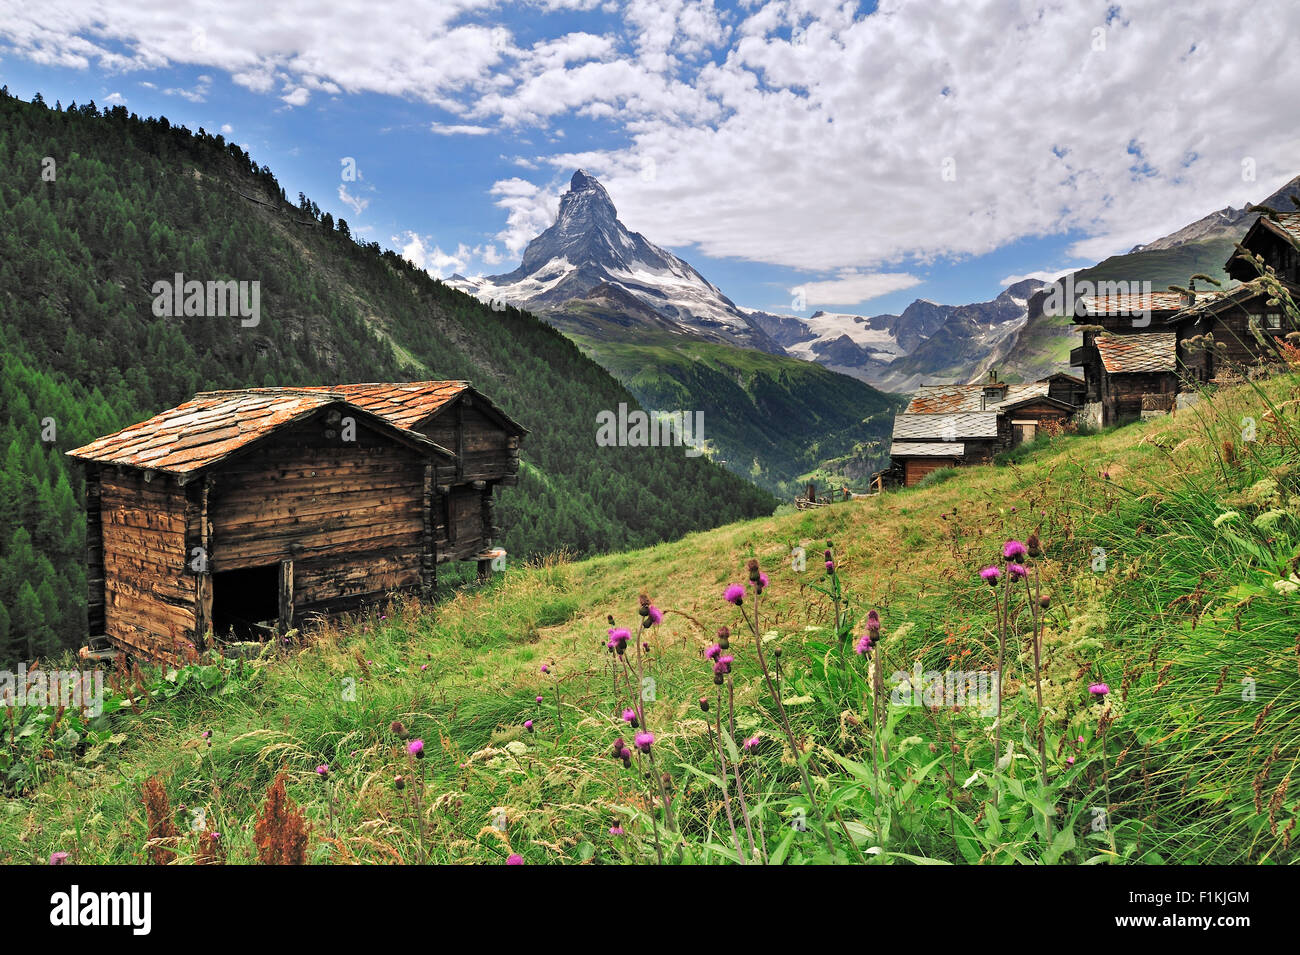 Les greniers traditionnels en bois / granges à Findeln avec vue sur le Mont Cervin, Valais, Alpes Suisses, Suisse Banque D'Images